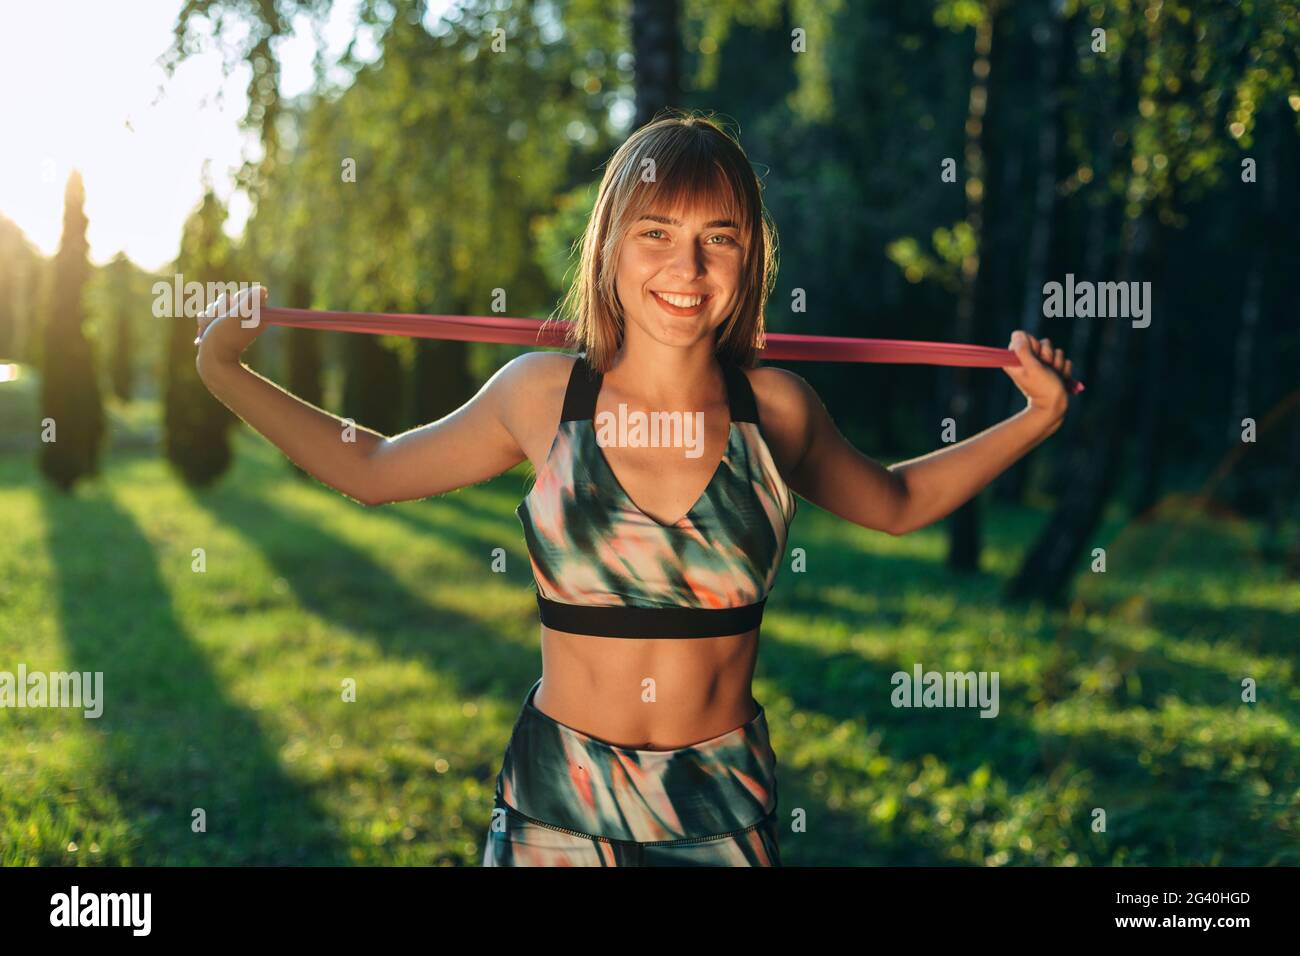 Glückliche junge Frau, die im Freien trainiert. Fitness Gummiband in den Händen eines lächelnden Mädchens. Stockfoto